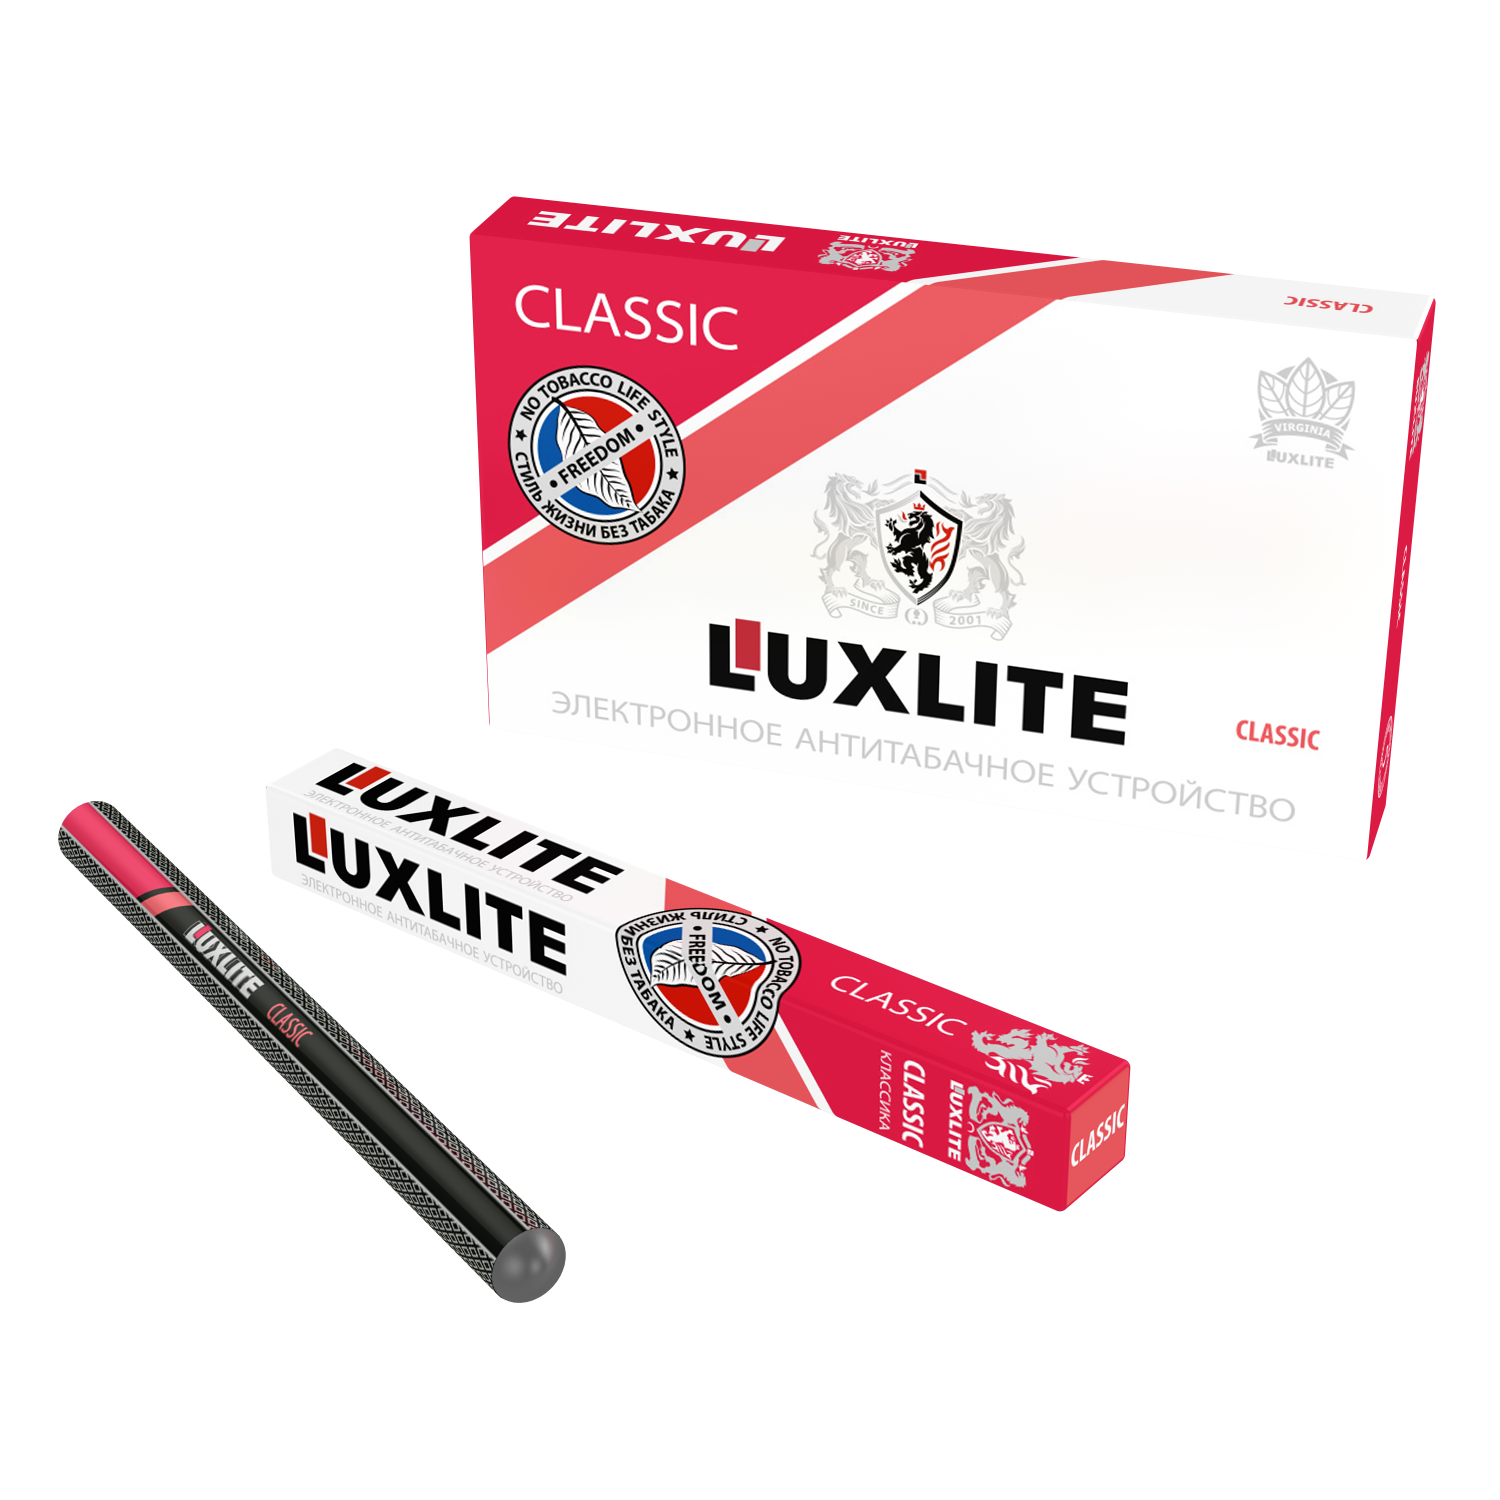 Одноразовые электронные сигареты Люкслайт. Электронная сигарета Luxlite Classic. Одноразовые сигареты Luxlite. Luxlite электронные сигареты без никотина. Купить сигареты табак электронные сигареты